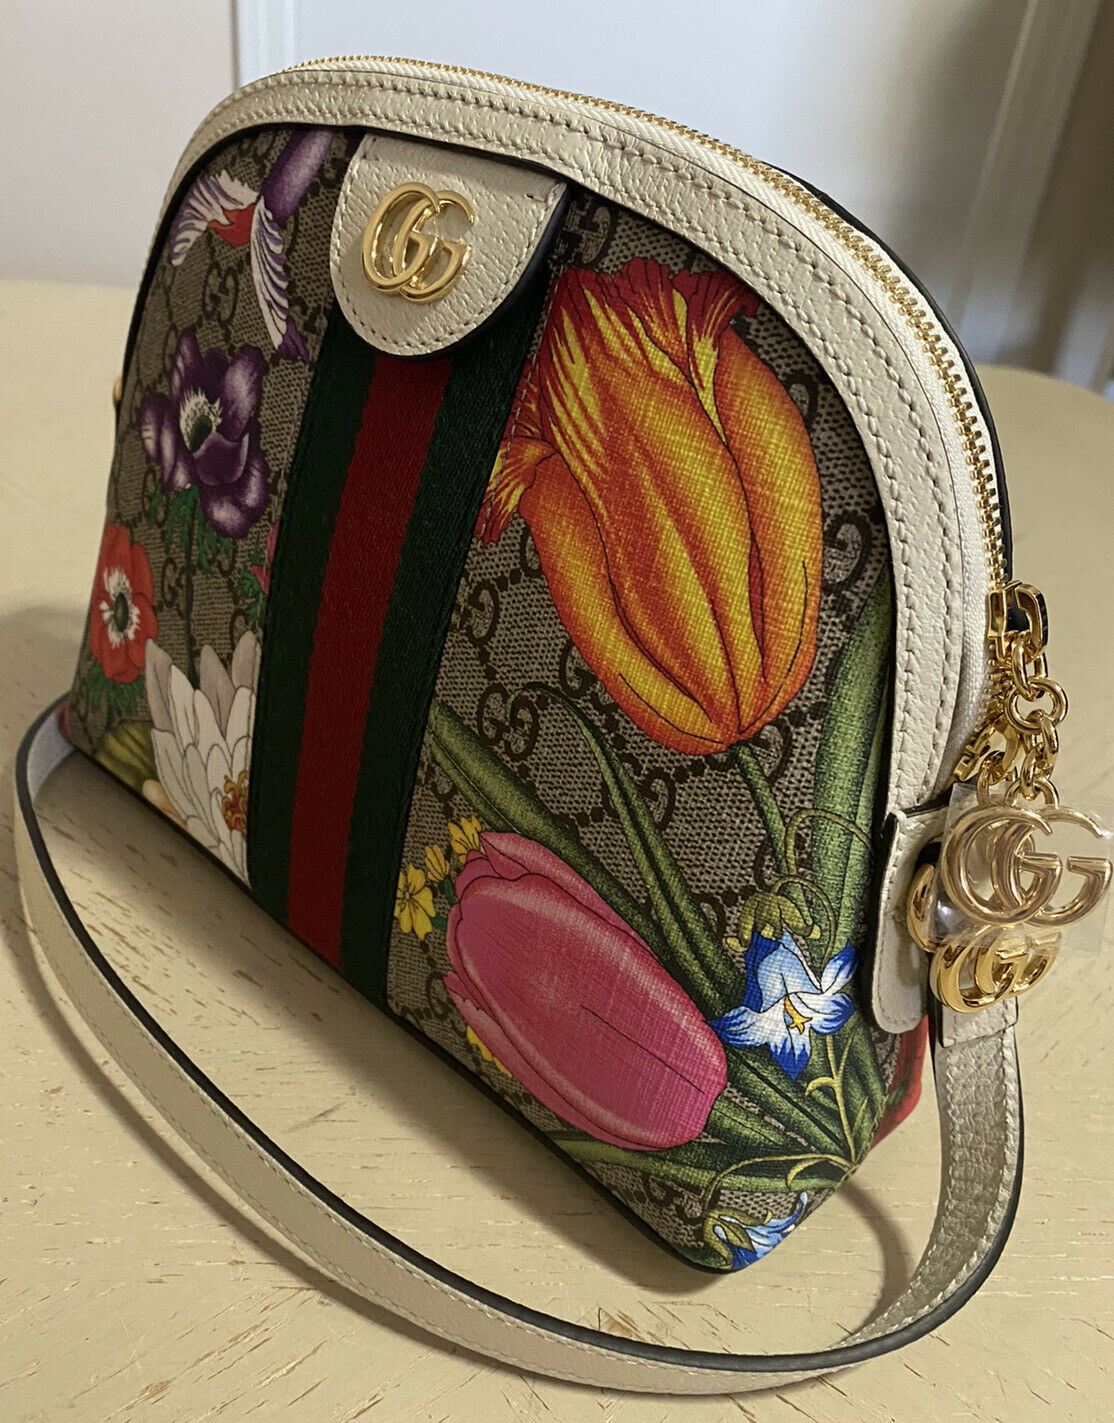 SNEAK PREVIEW @ FE Brand/Model: Gucci 499621 GG Supreme Floral